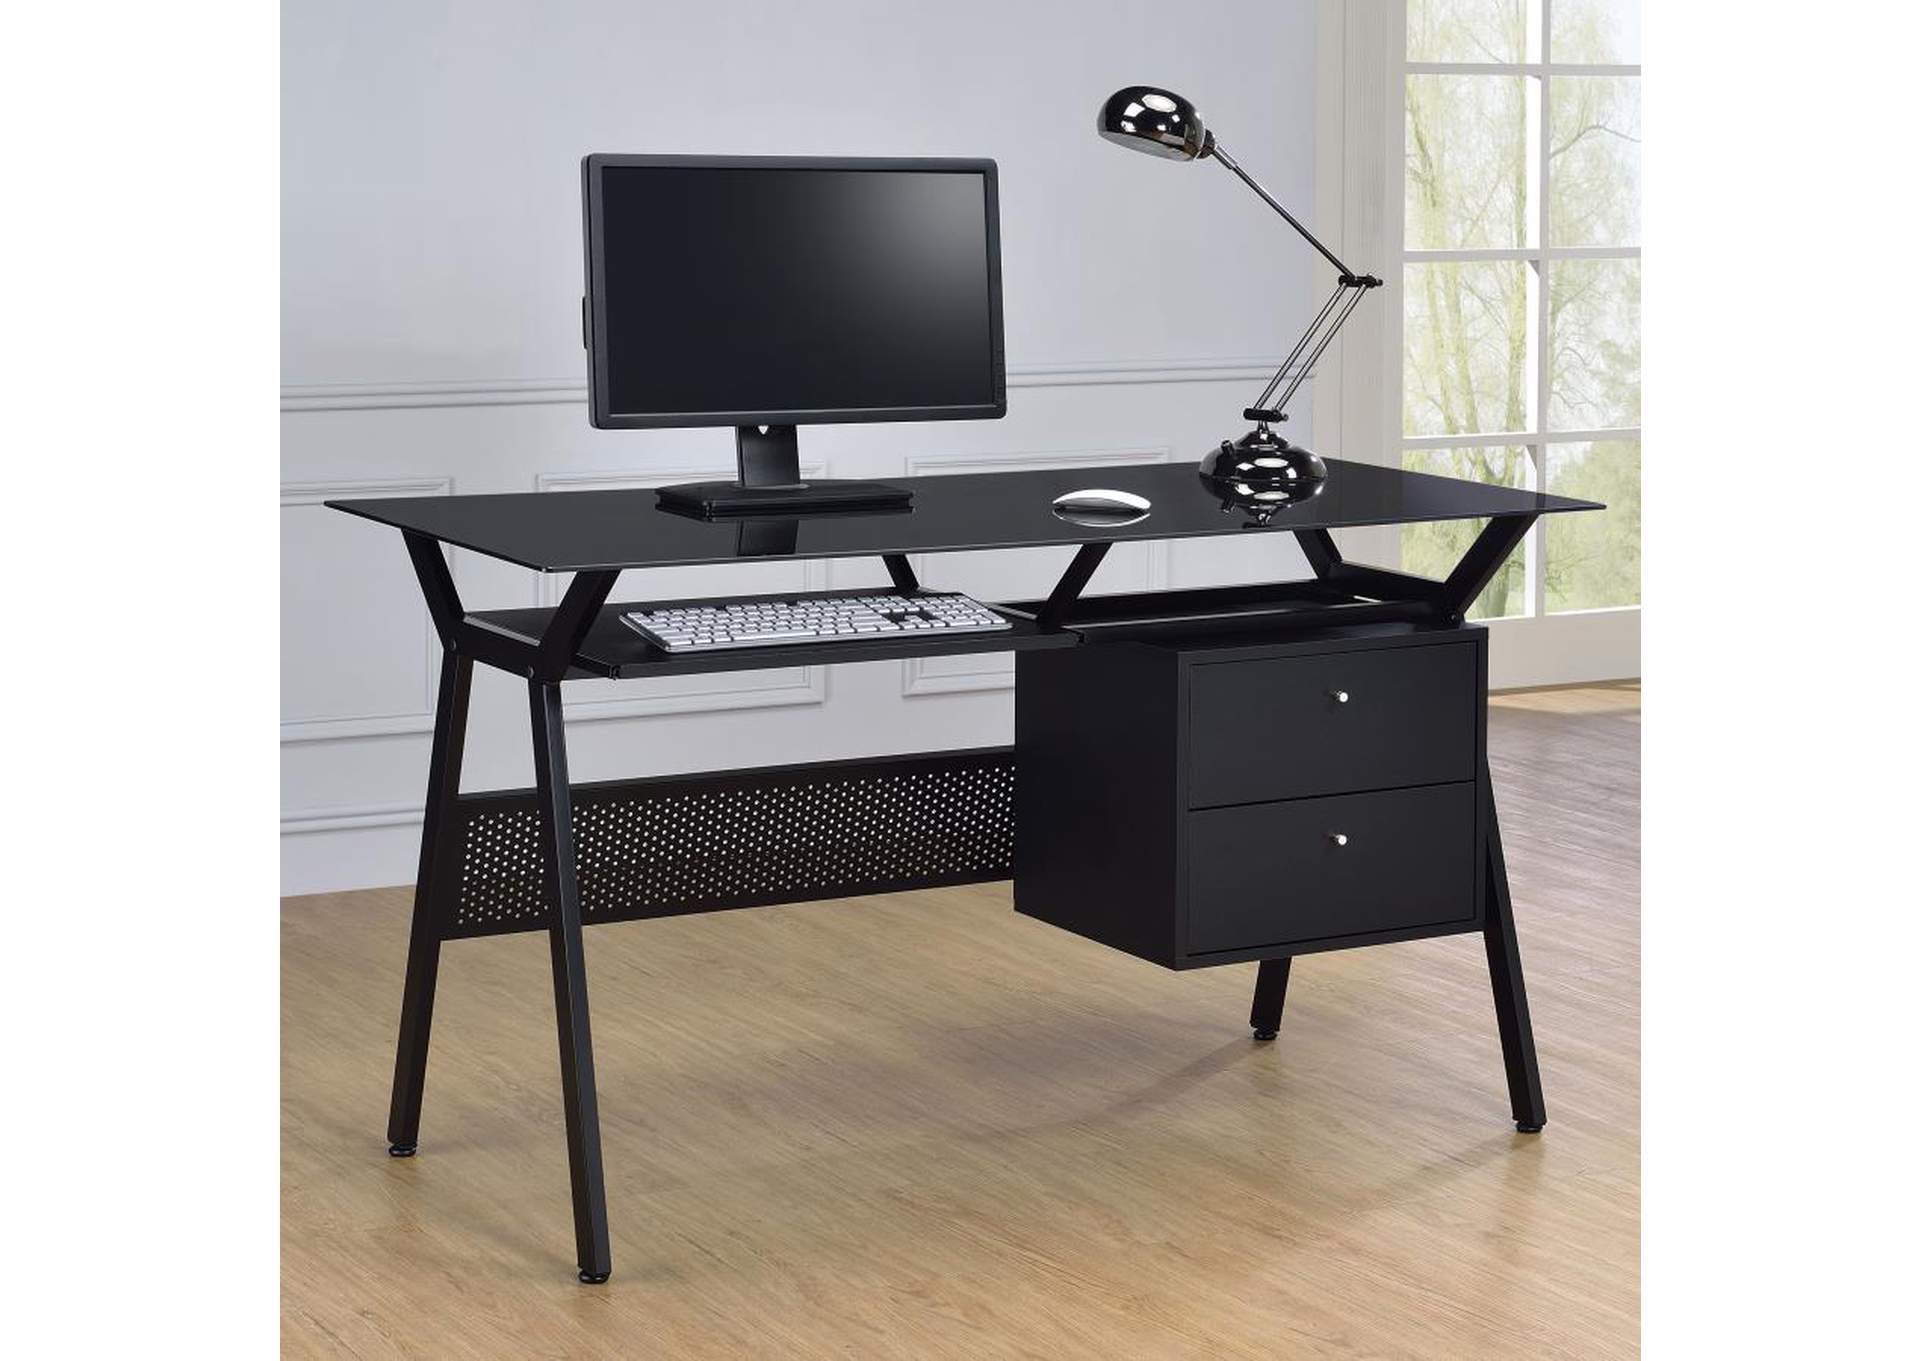 Weaving 2-Drawer Computer Desk Black,Coaster Furniture